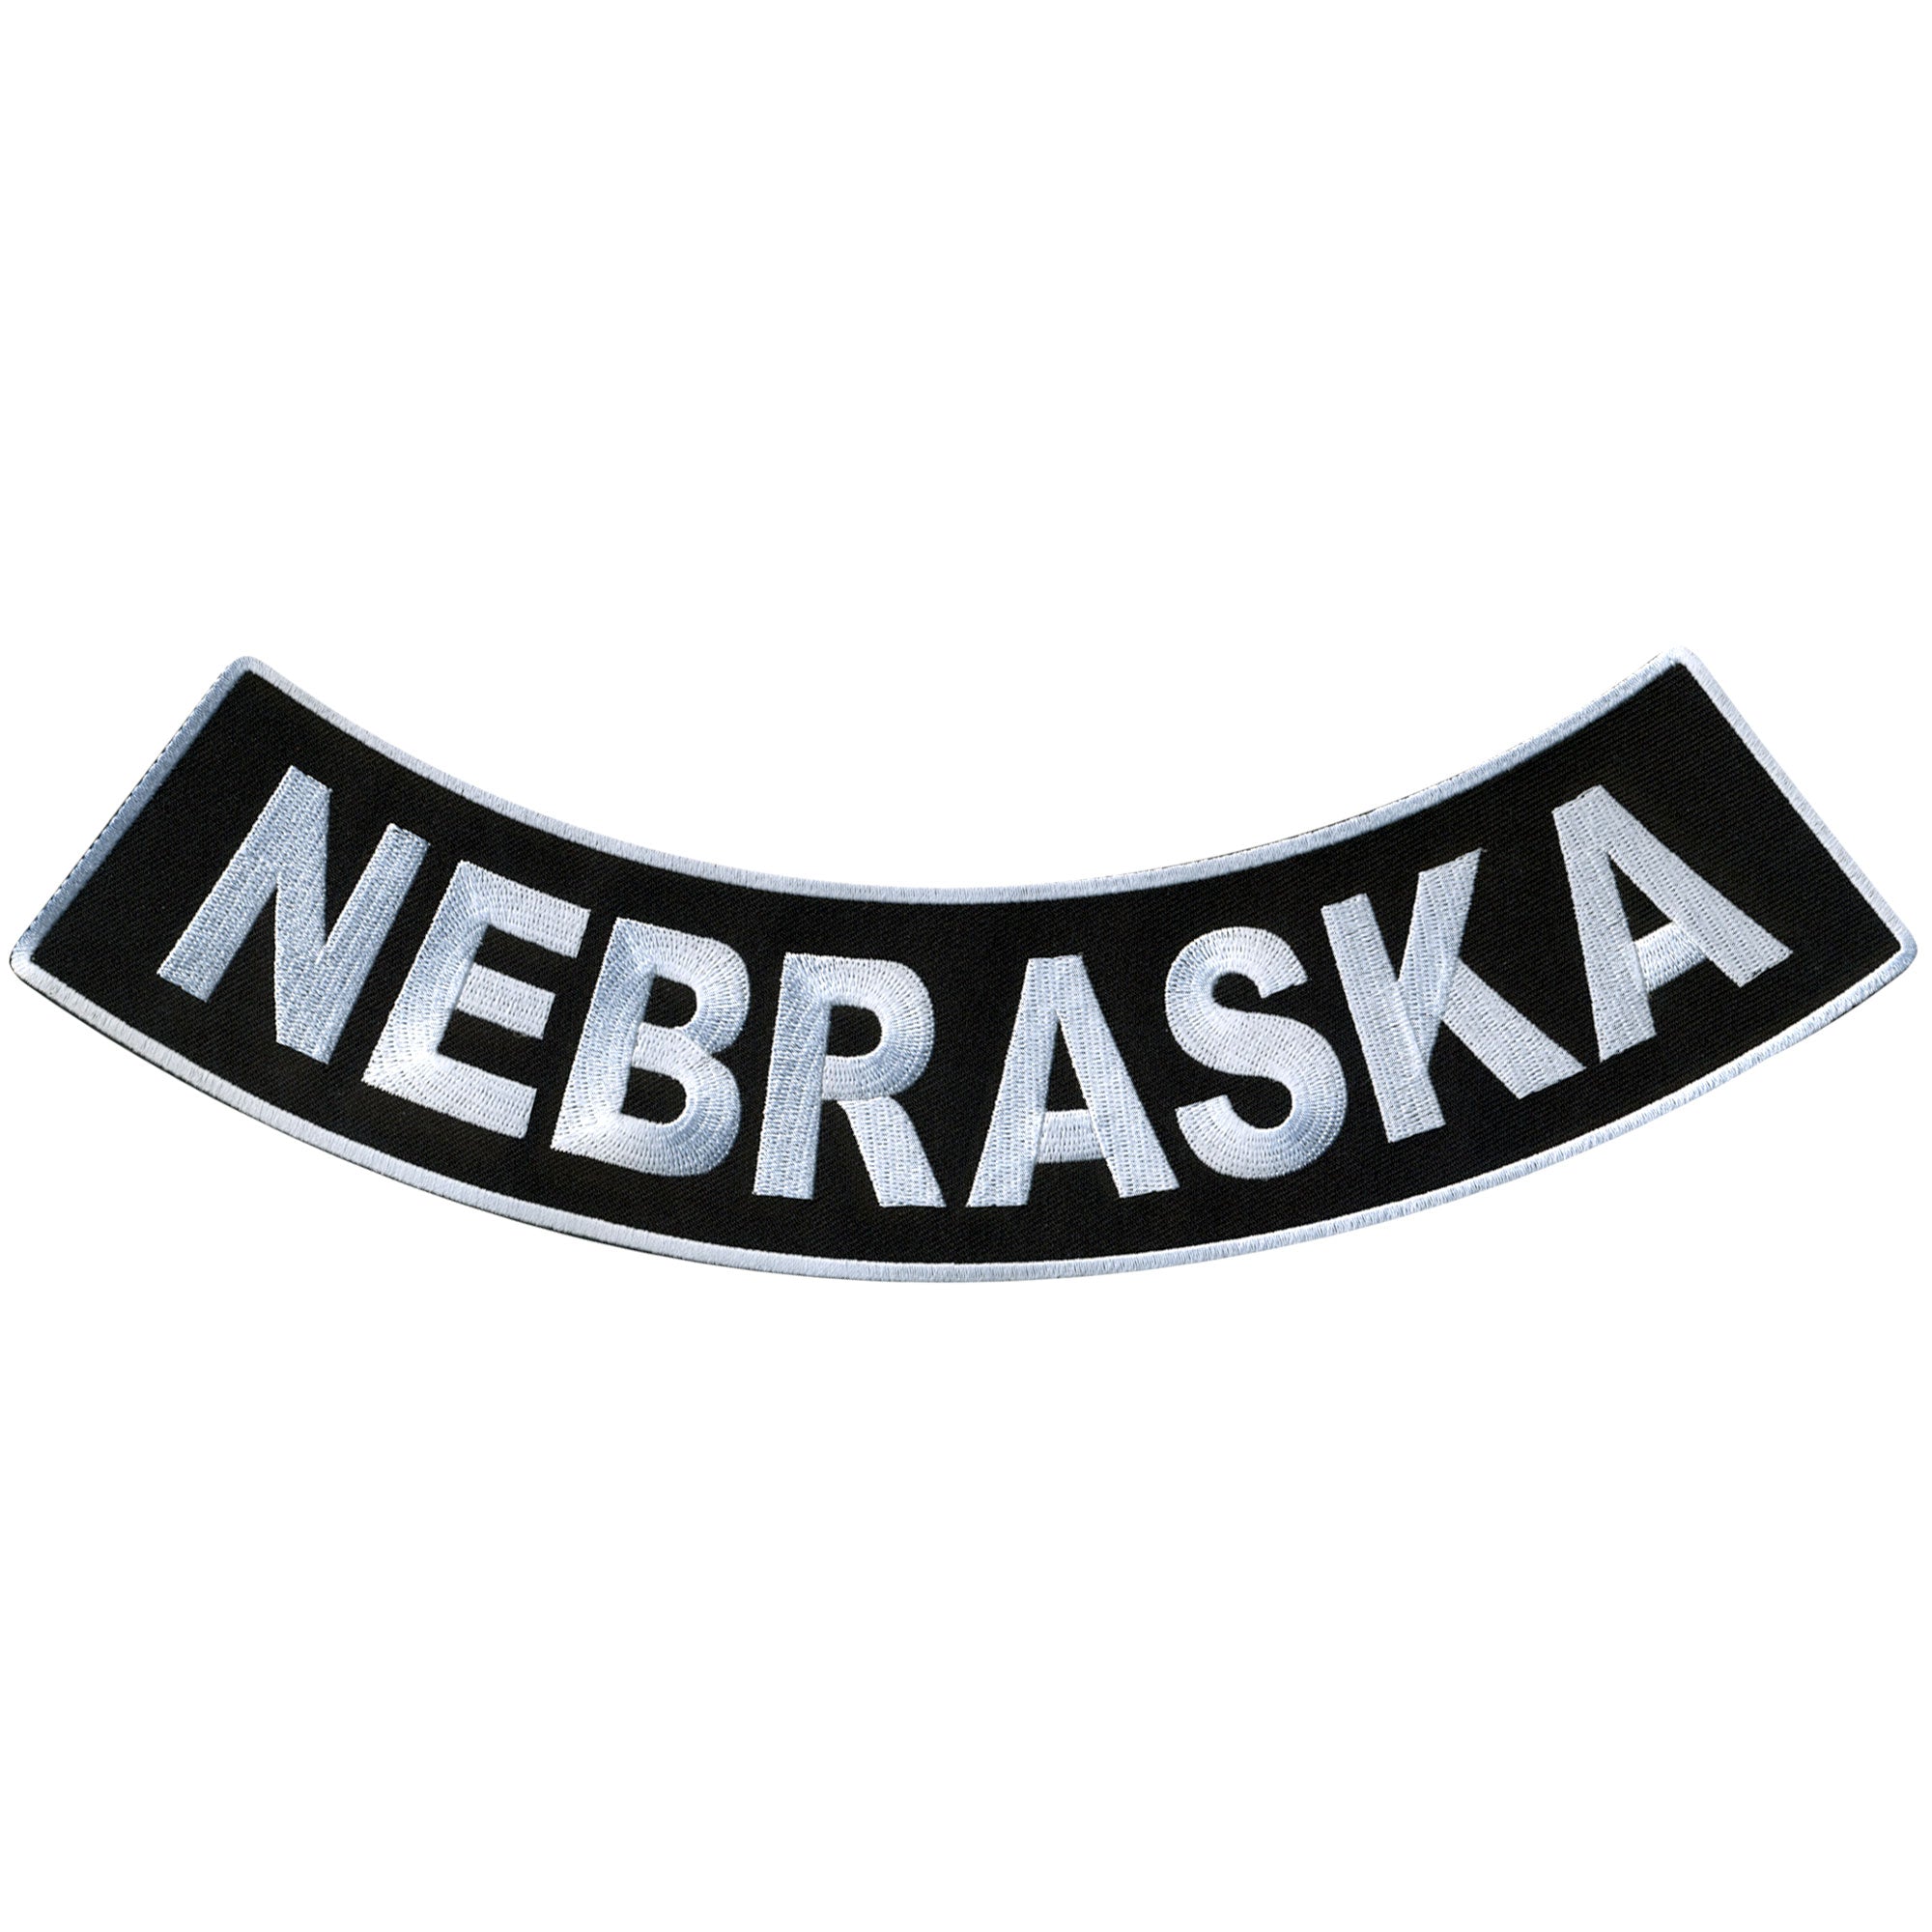 Hot Leathers Nebraska 12” X 3” Bottom Rocker Patch